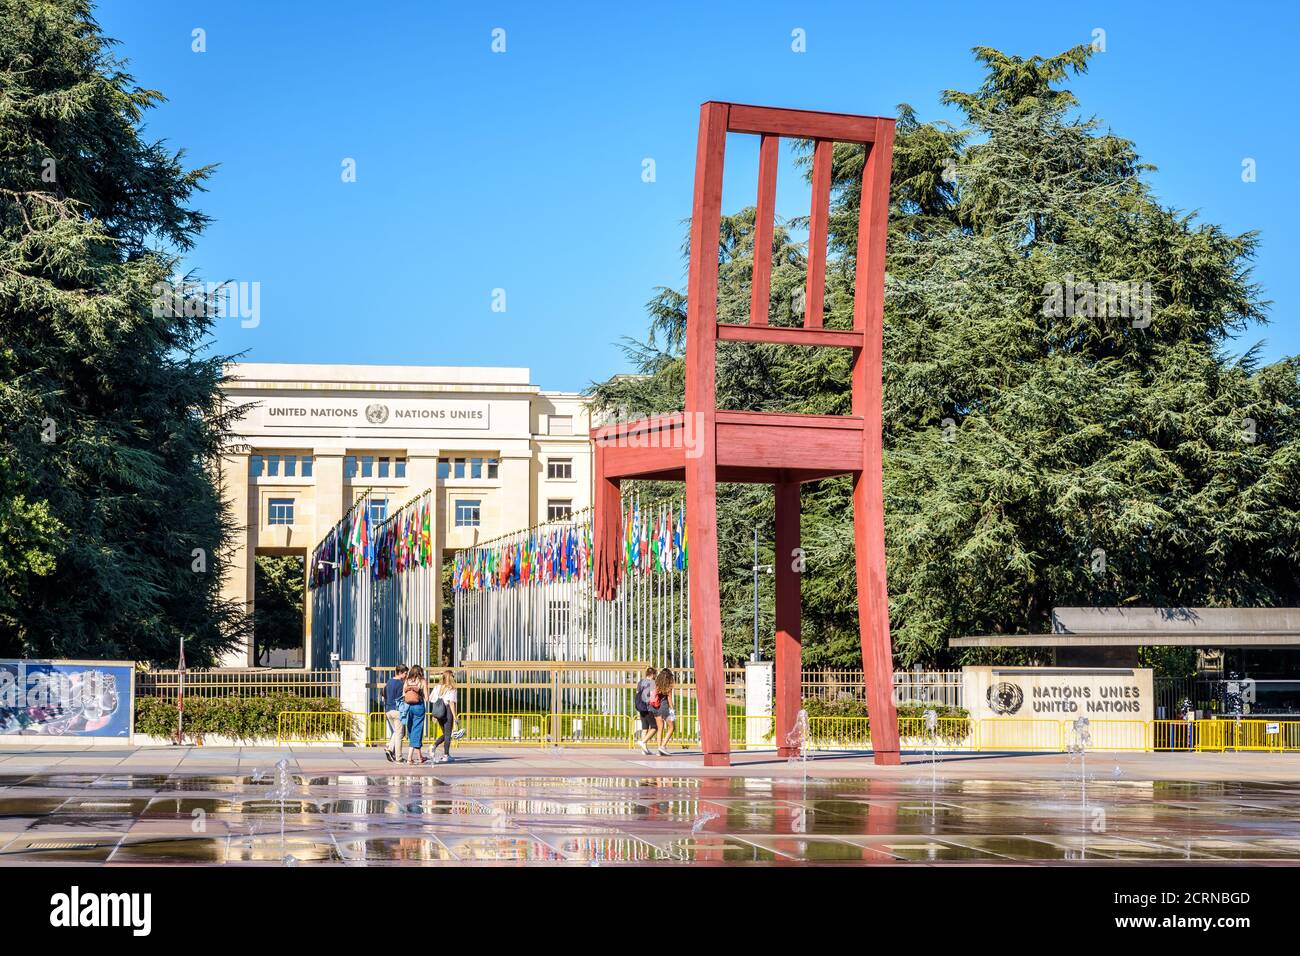 La escultura "Broken Chair" se encuentra en la plaza de las Naciones, frente al Palacio de las Naciones, sede de la Oficina de las Naciones Unidas en Ginebra, Suiza. Foto de stock